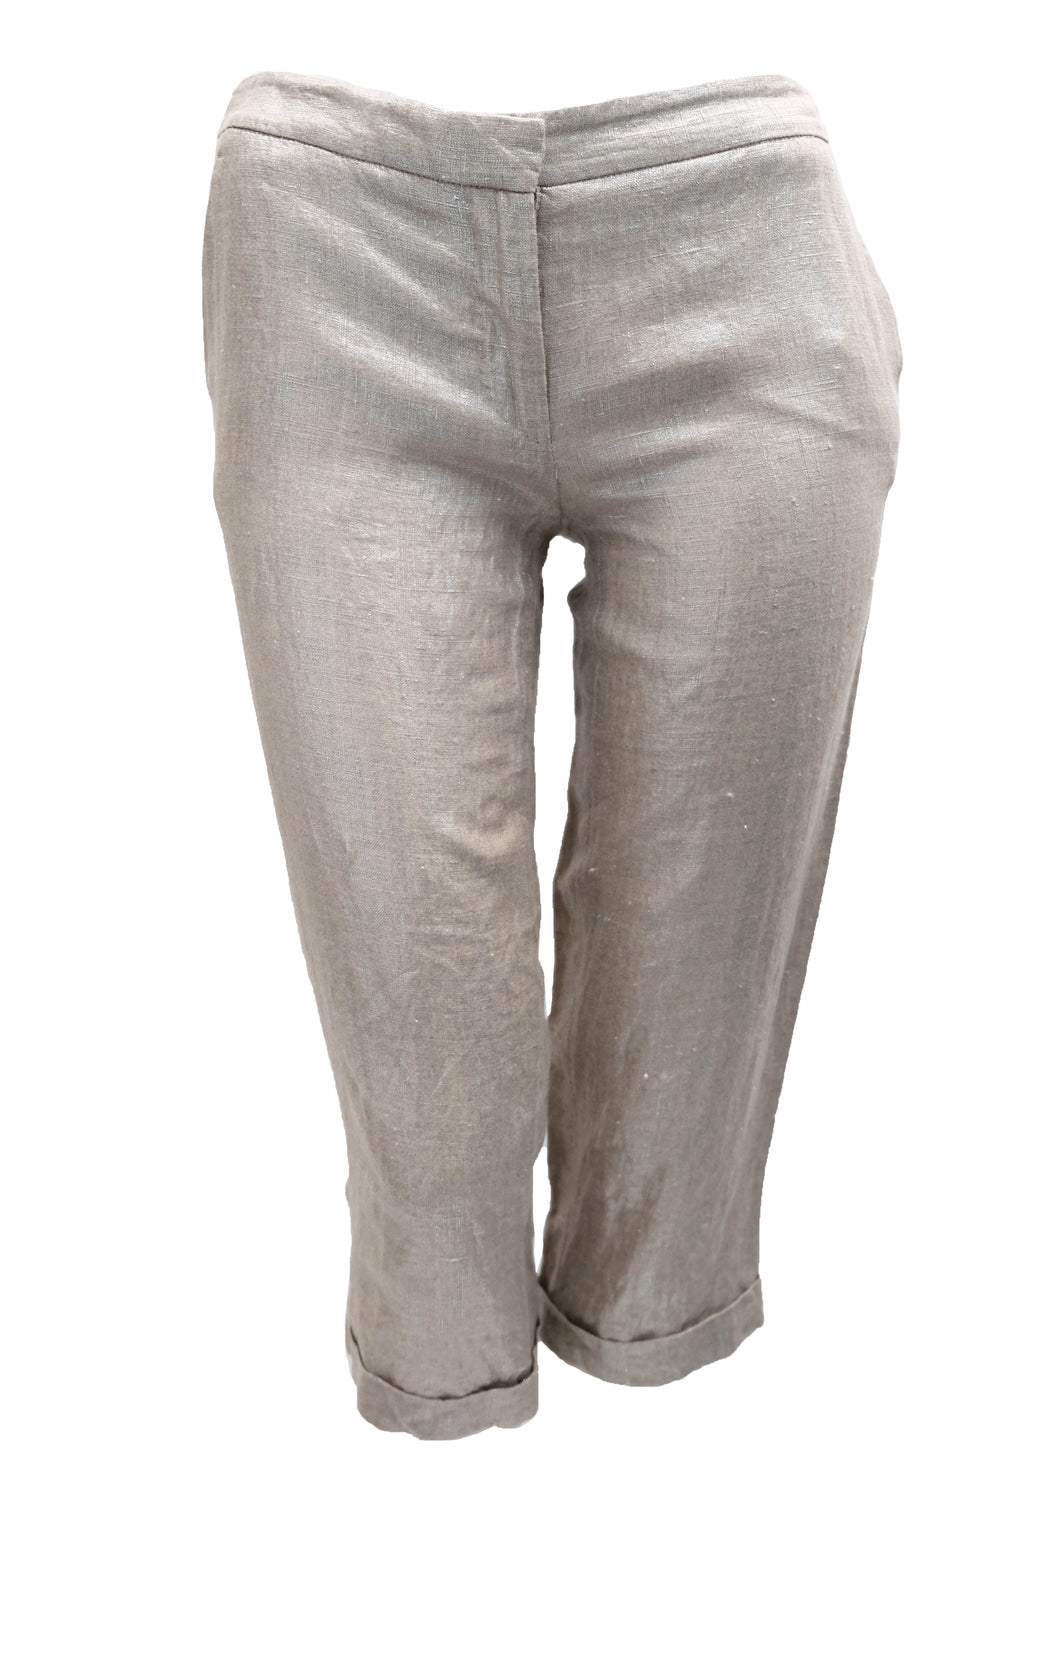 Alexander McQueen Capri Pants in Silver Linen, UK8